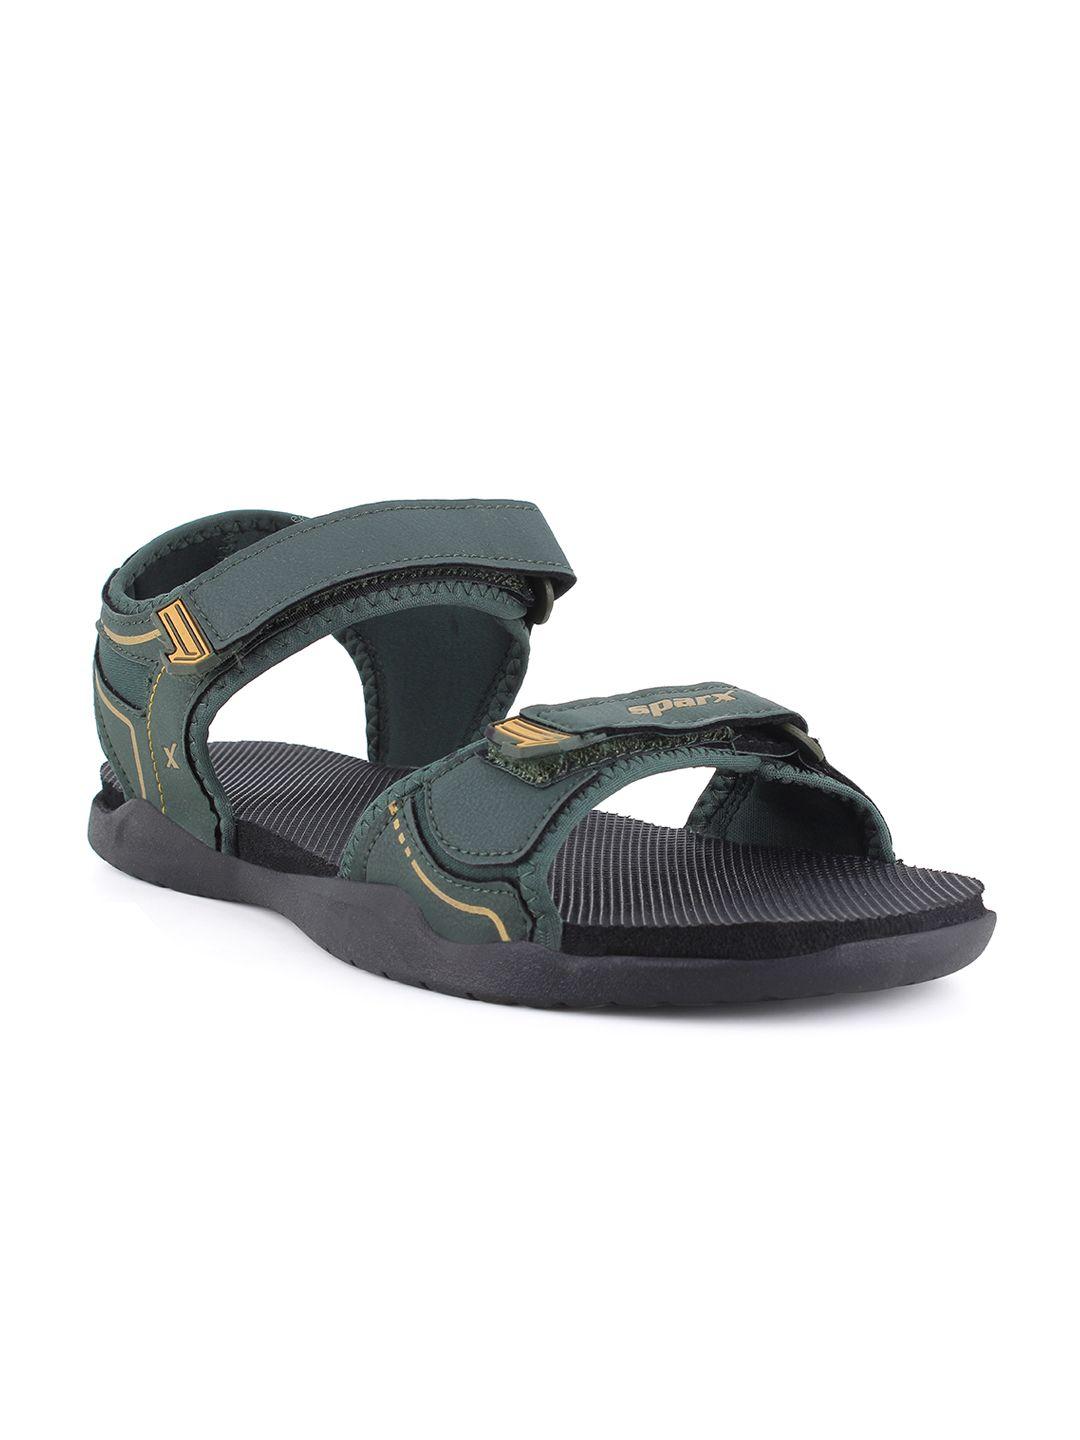 sparx-men-green-&-black-floater-sports-sandals